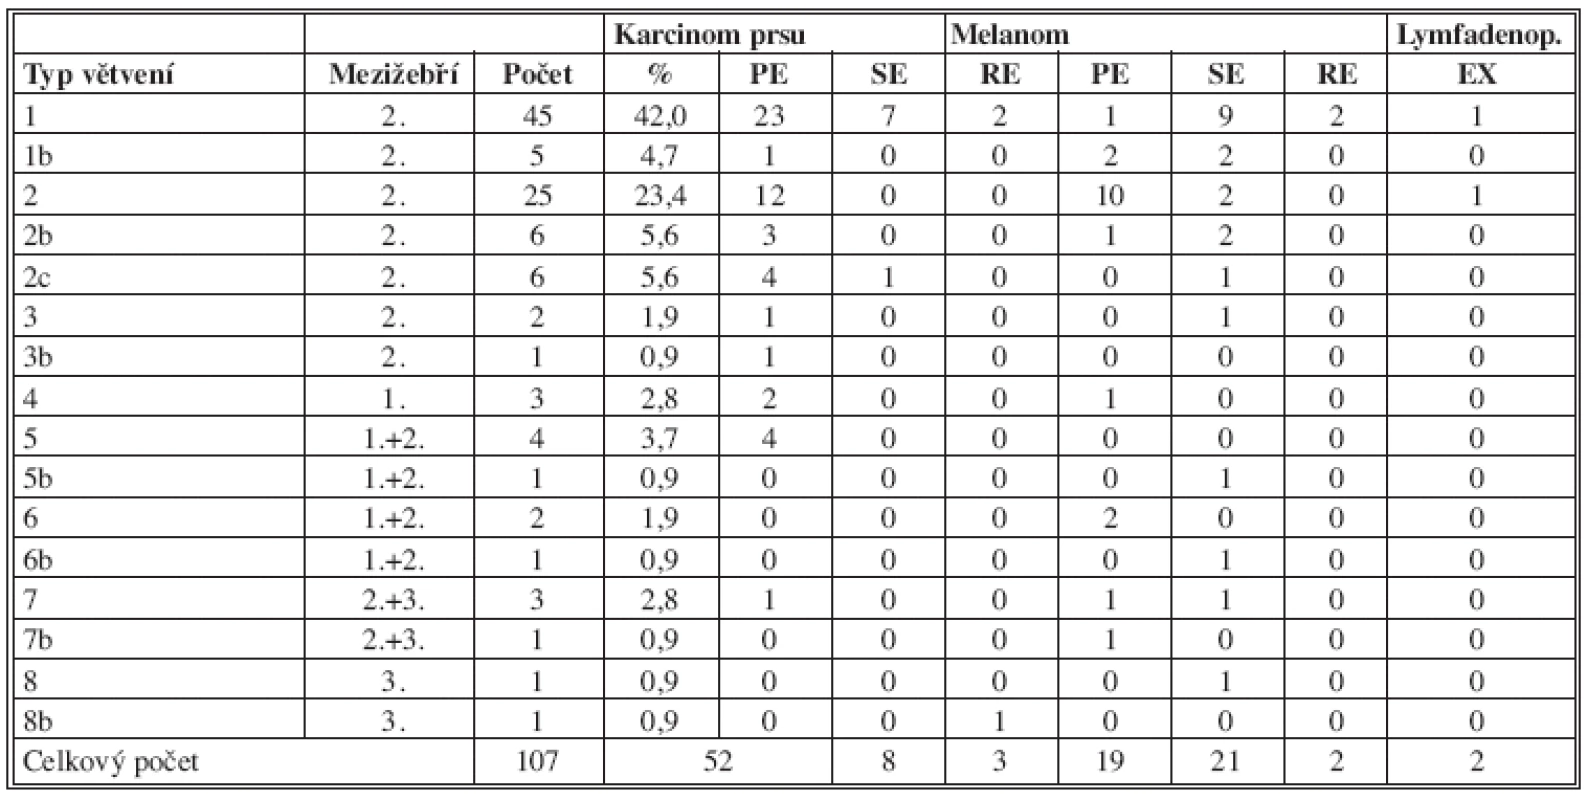 Souhrnná tabulka anatomických typů větvení
Tab. 4: Summary table of anatomical types of branching